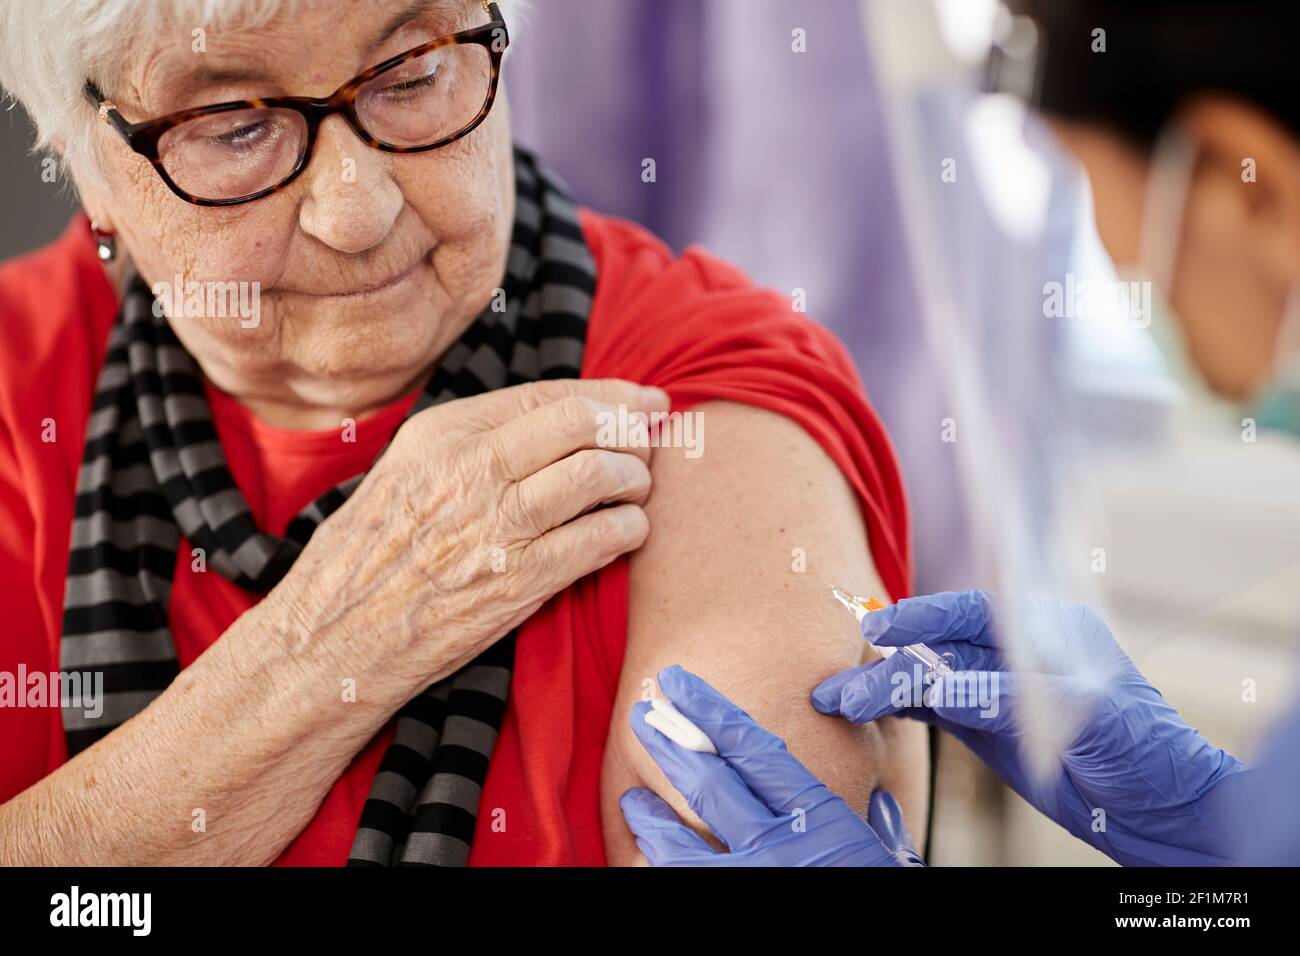 Senior woman getting covid vaccine Stock Photo